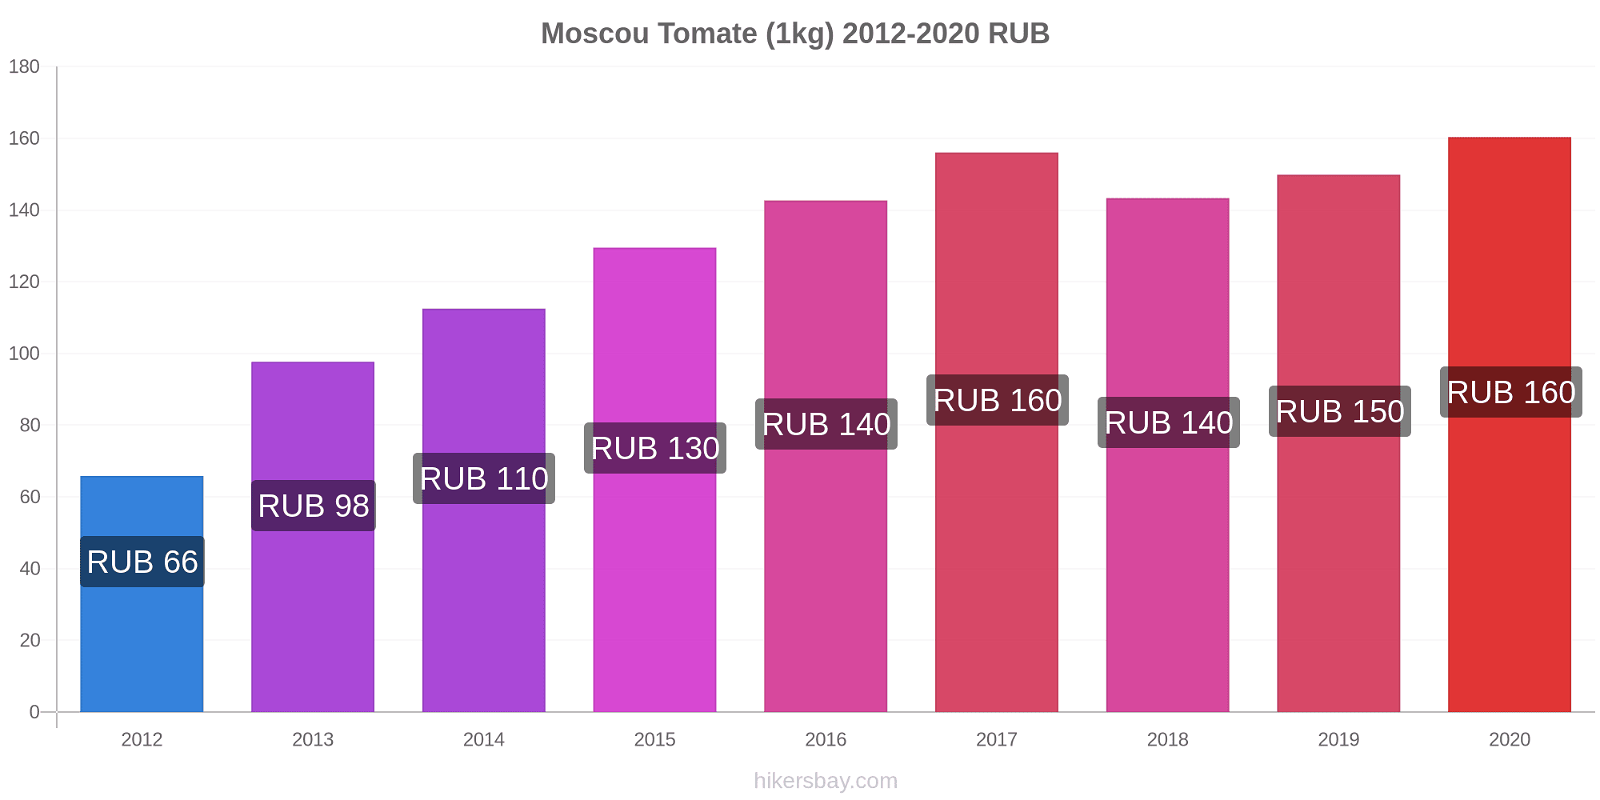 Moscou changements de prix Tomate (1kg) hikersbay.com